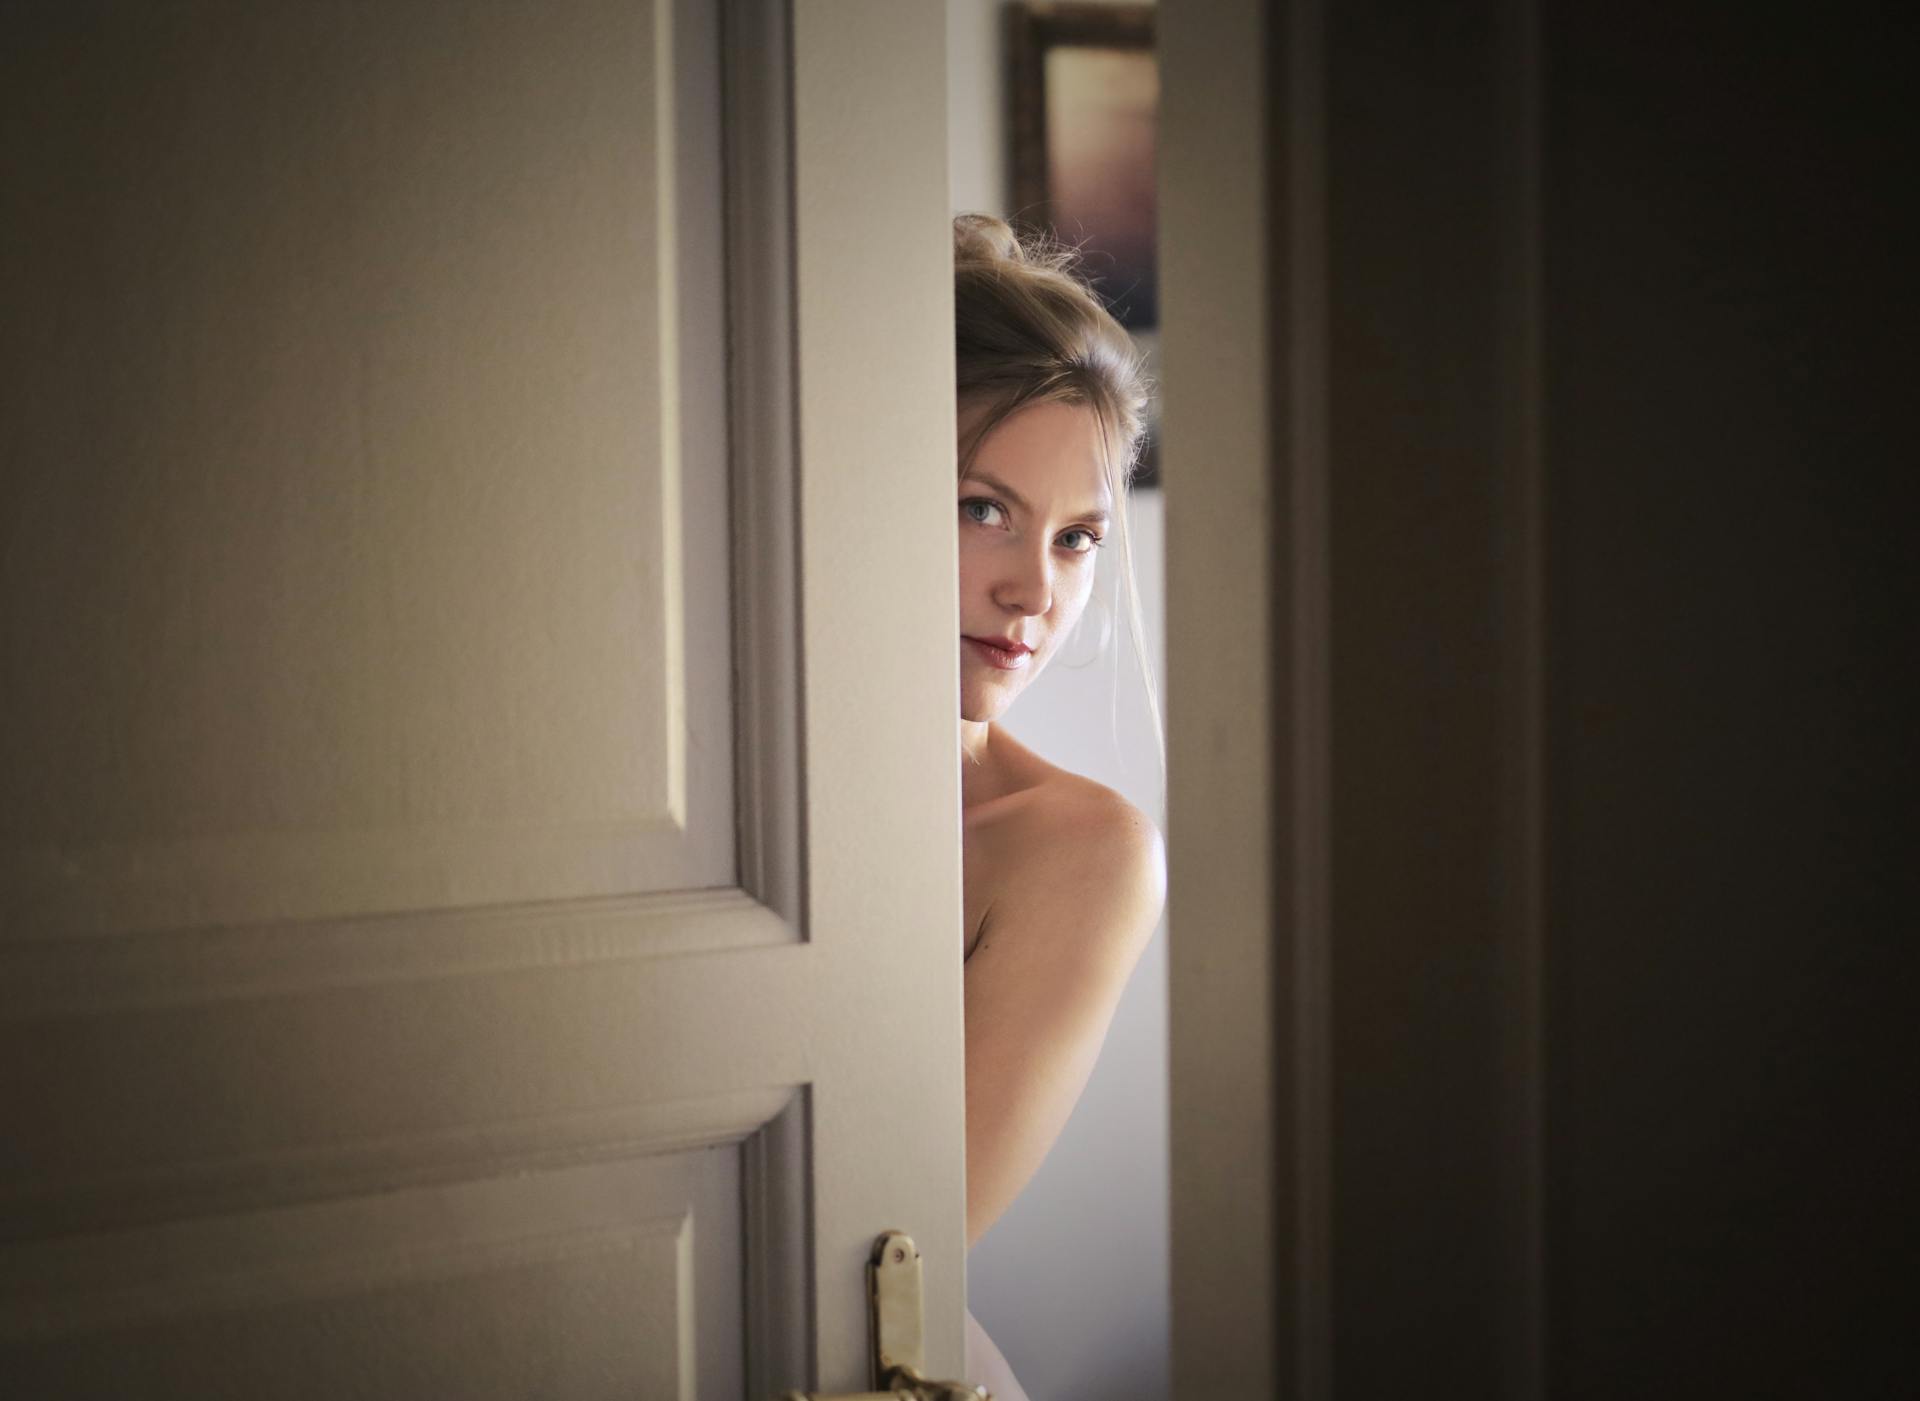 A woman peeking around a door | Source: Pexels